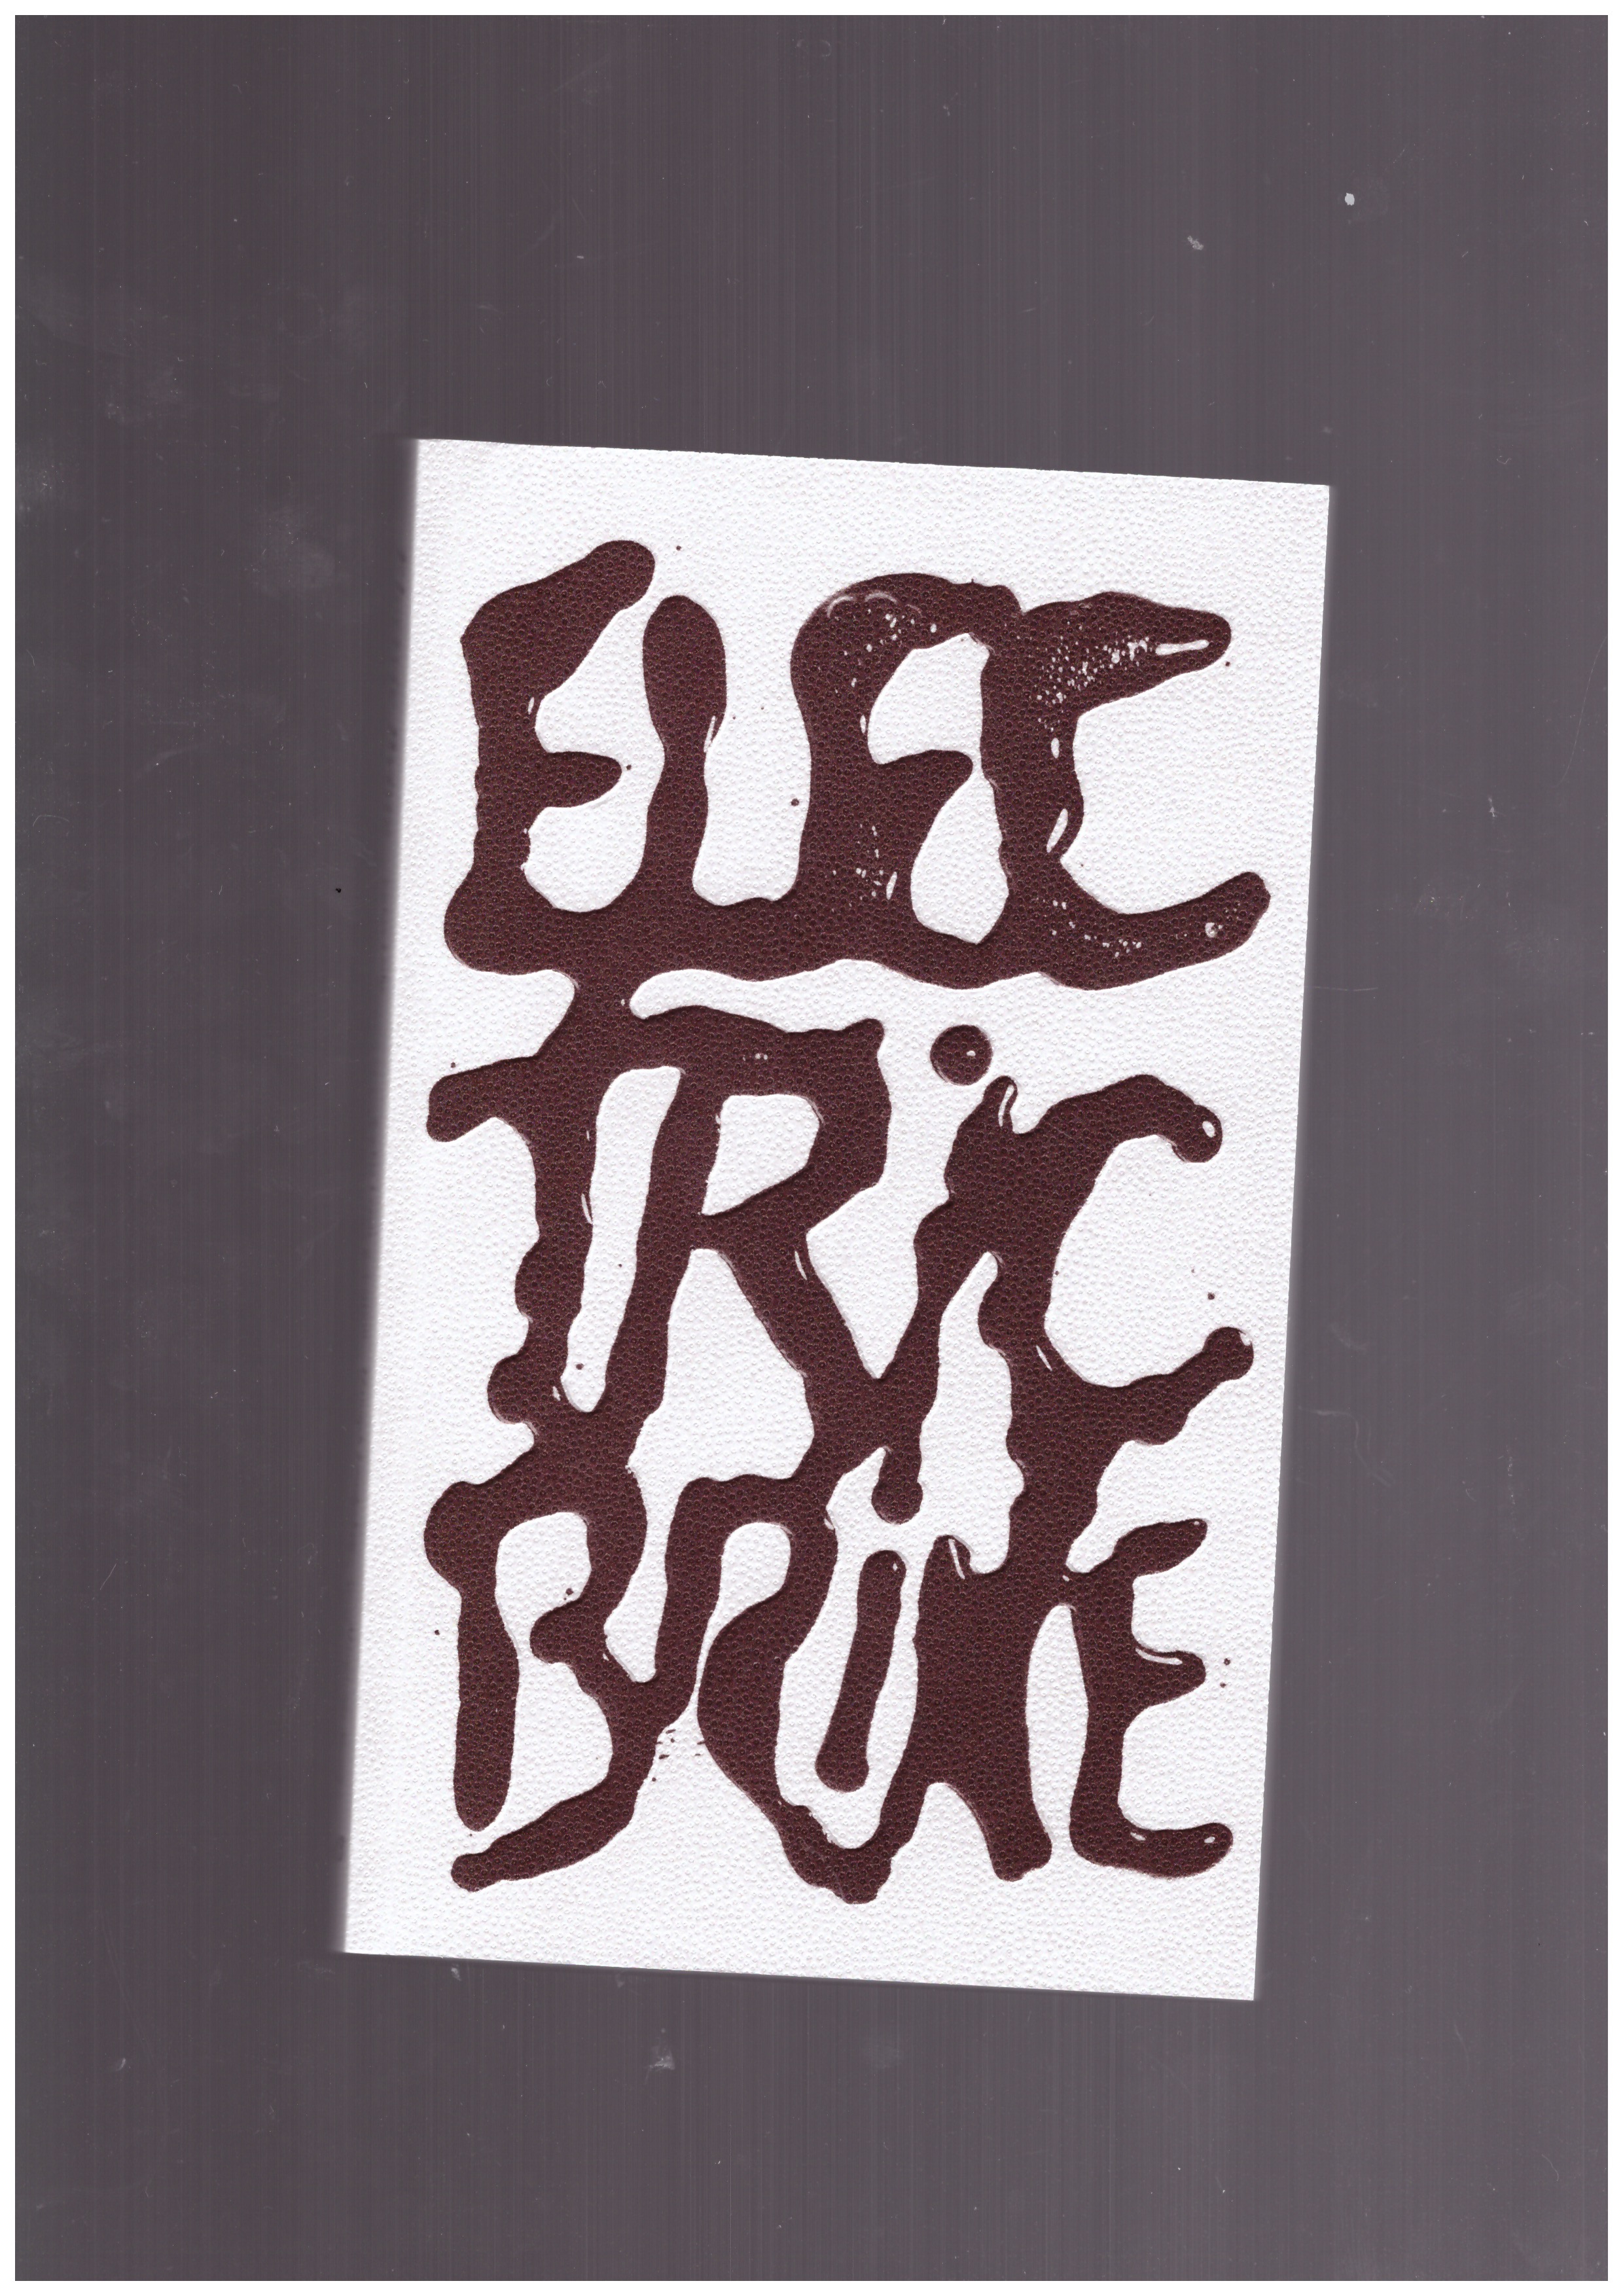 TEETS, Jennifer; MENDES, Margarida; HUNCHUCK, Elise (eds.) - Electric Brine